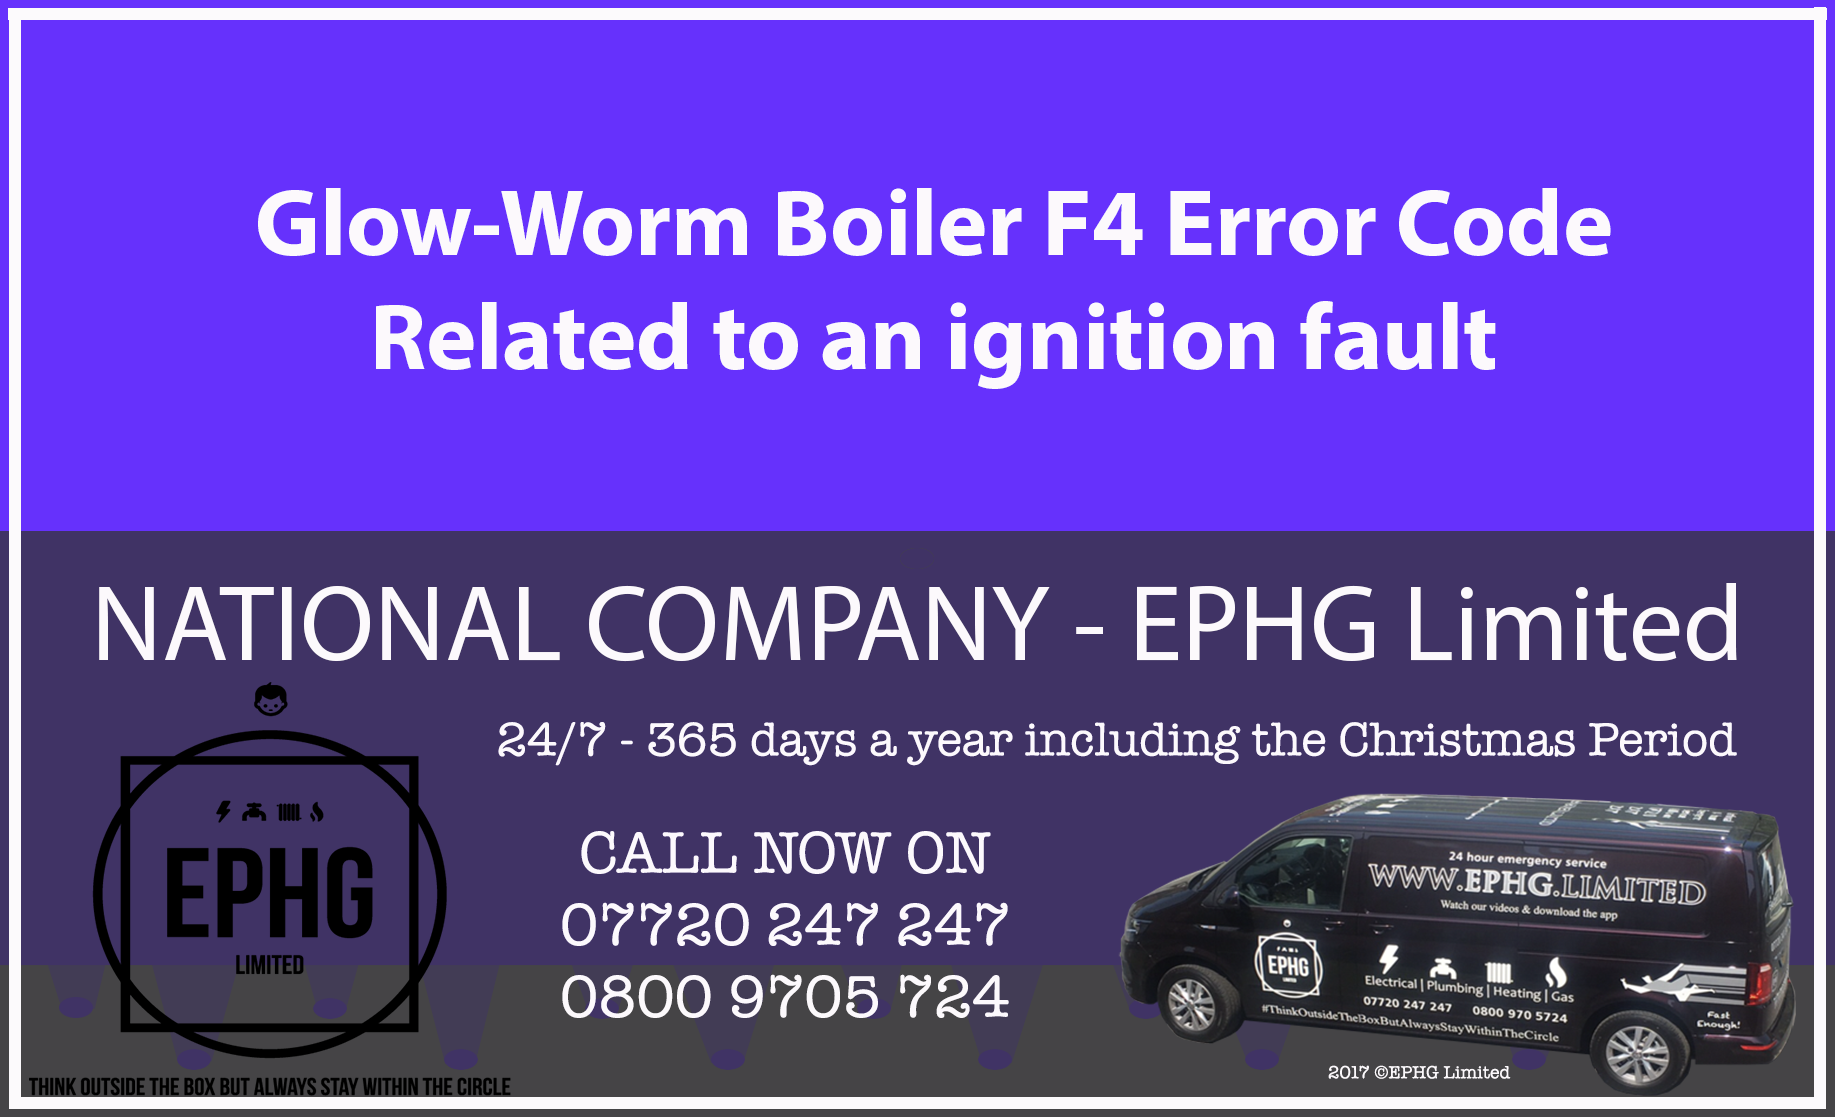 Glow-Worm boiler error code F4